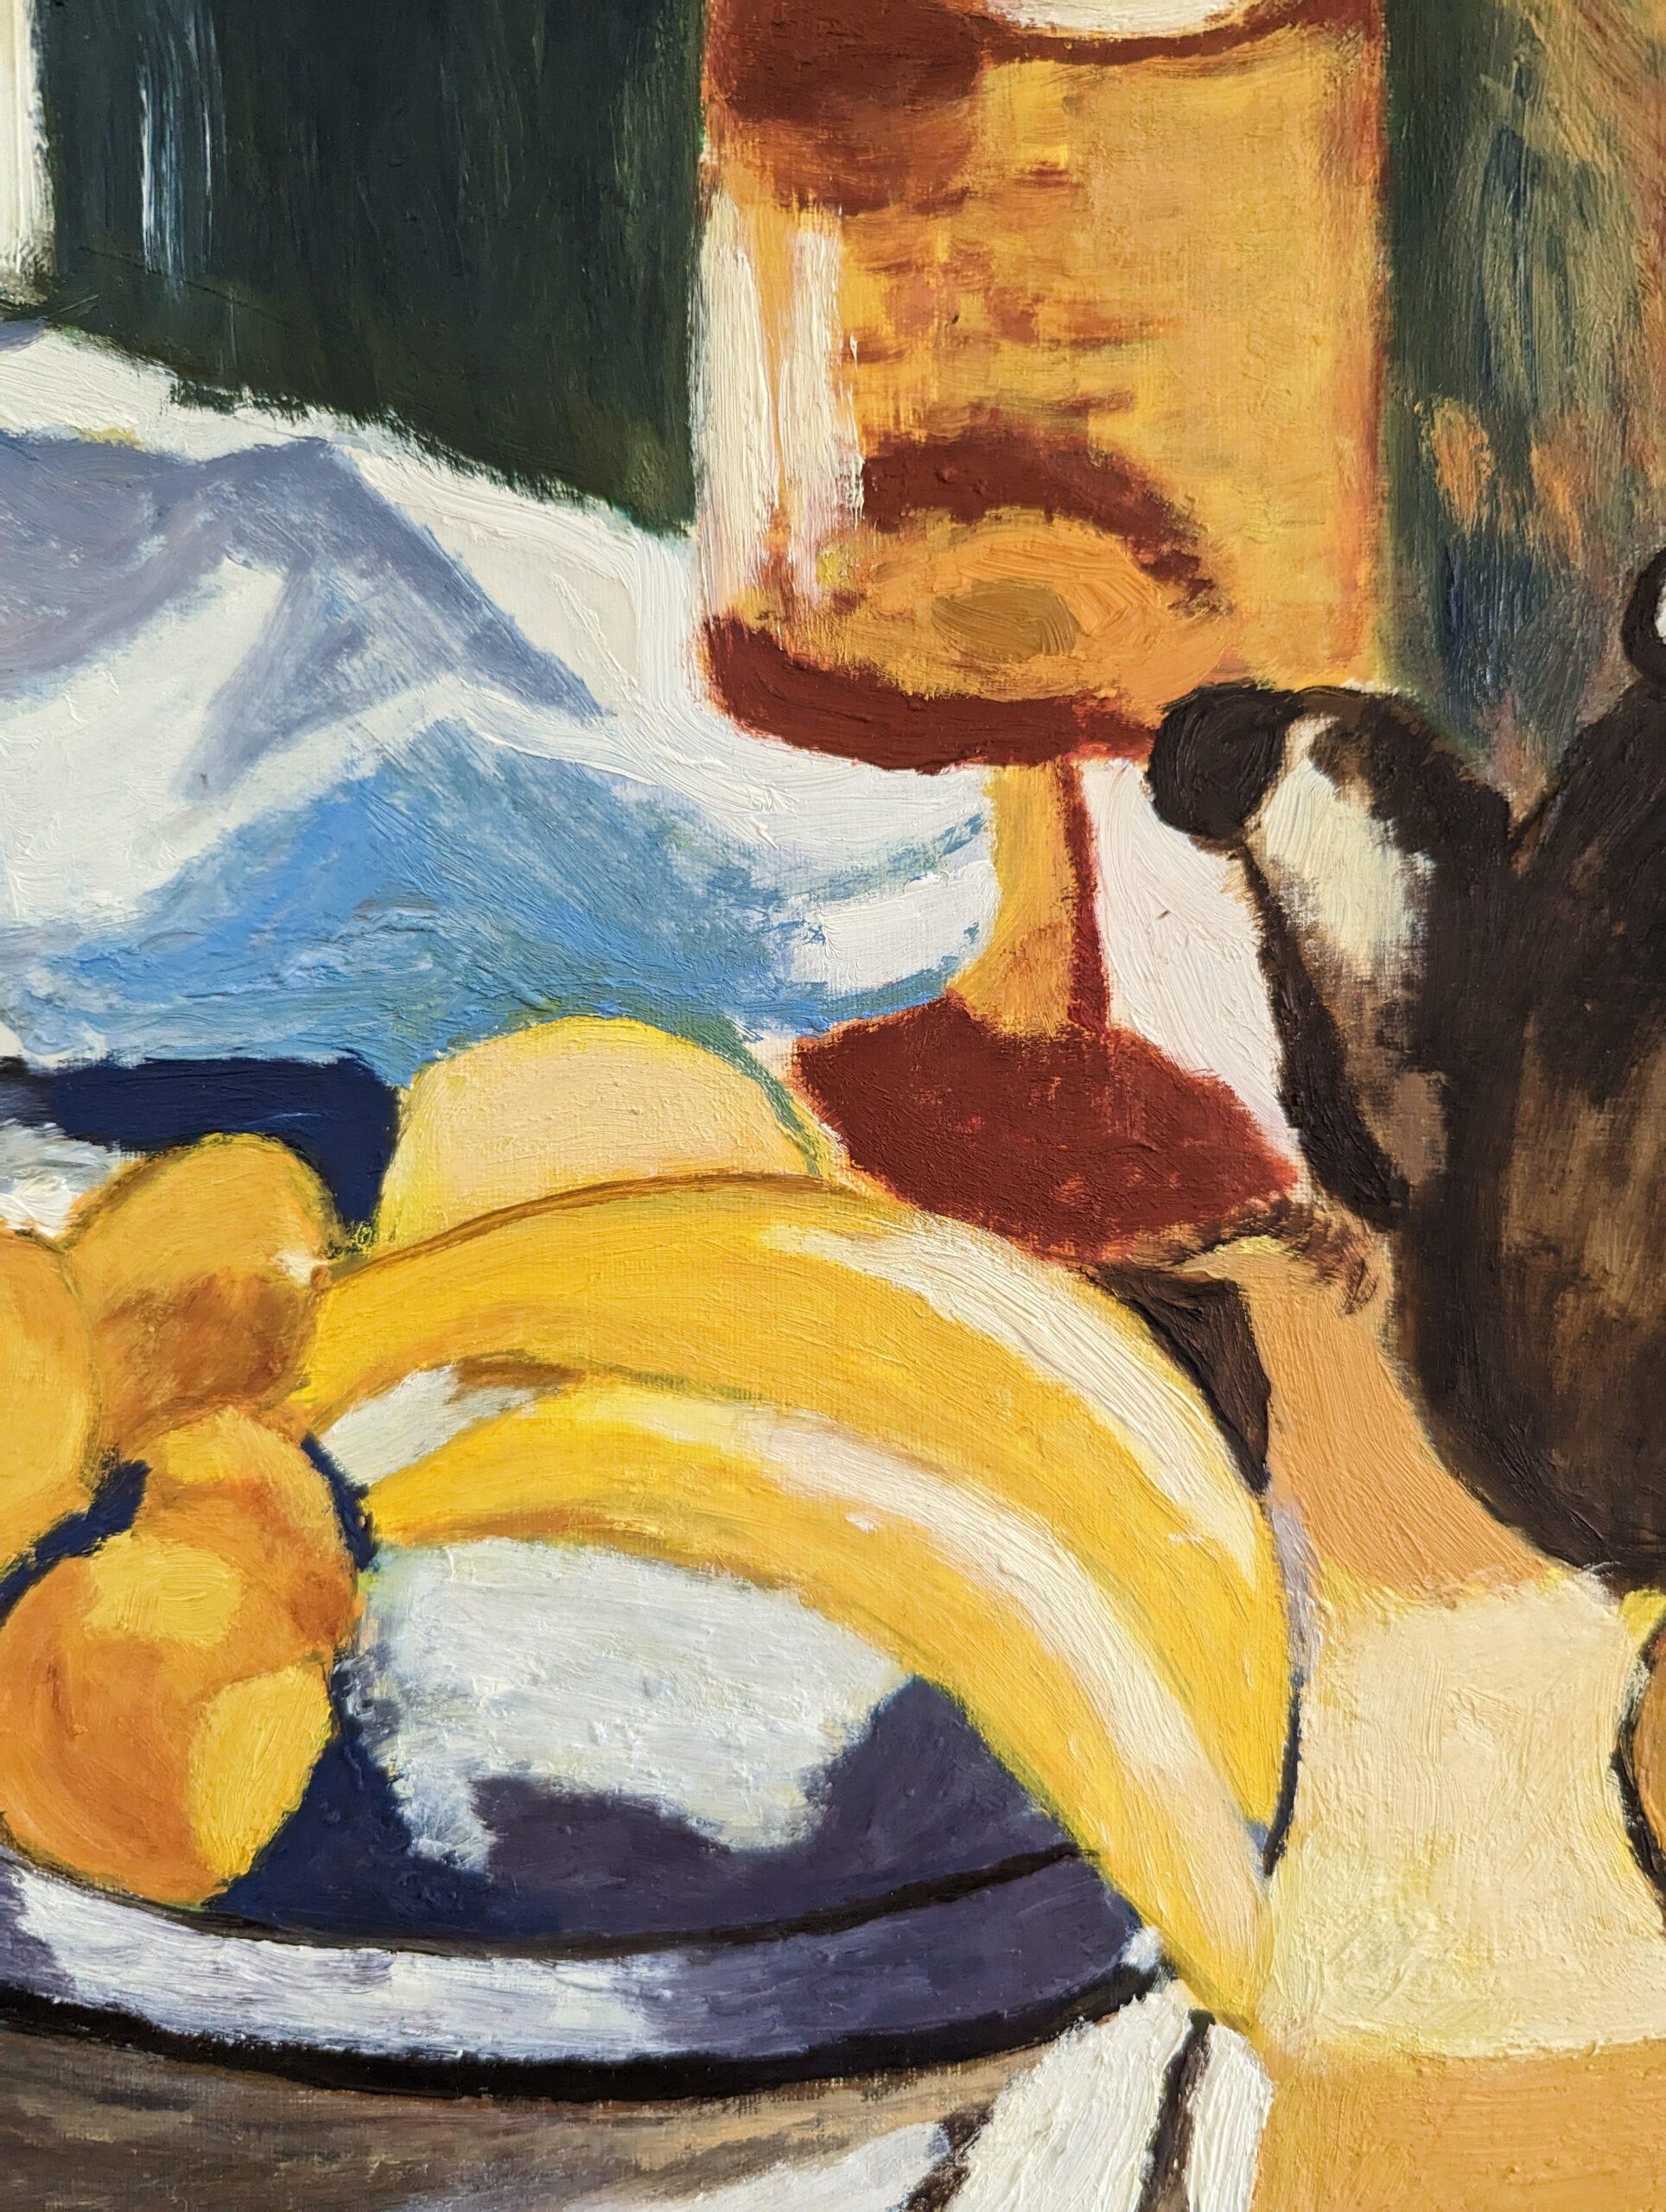 BANANAS
Taille : 30,5 x 42 cm (cadre compris)
Huile sur panneau

Une vibrante composition de nature morte moderniste du milieu du siècle, peinte à l'huile sur carton.

Sur une table sont posés une myriade d'objets du quotidien, tels qu'un bol de